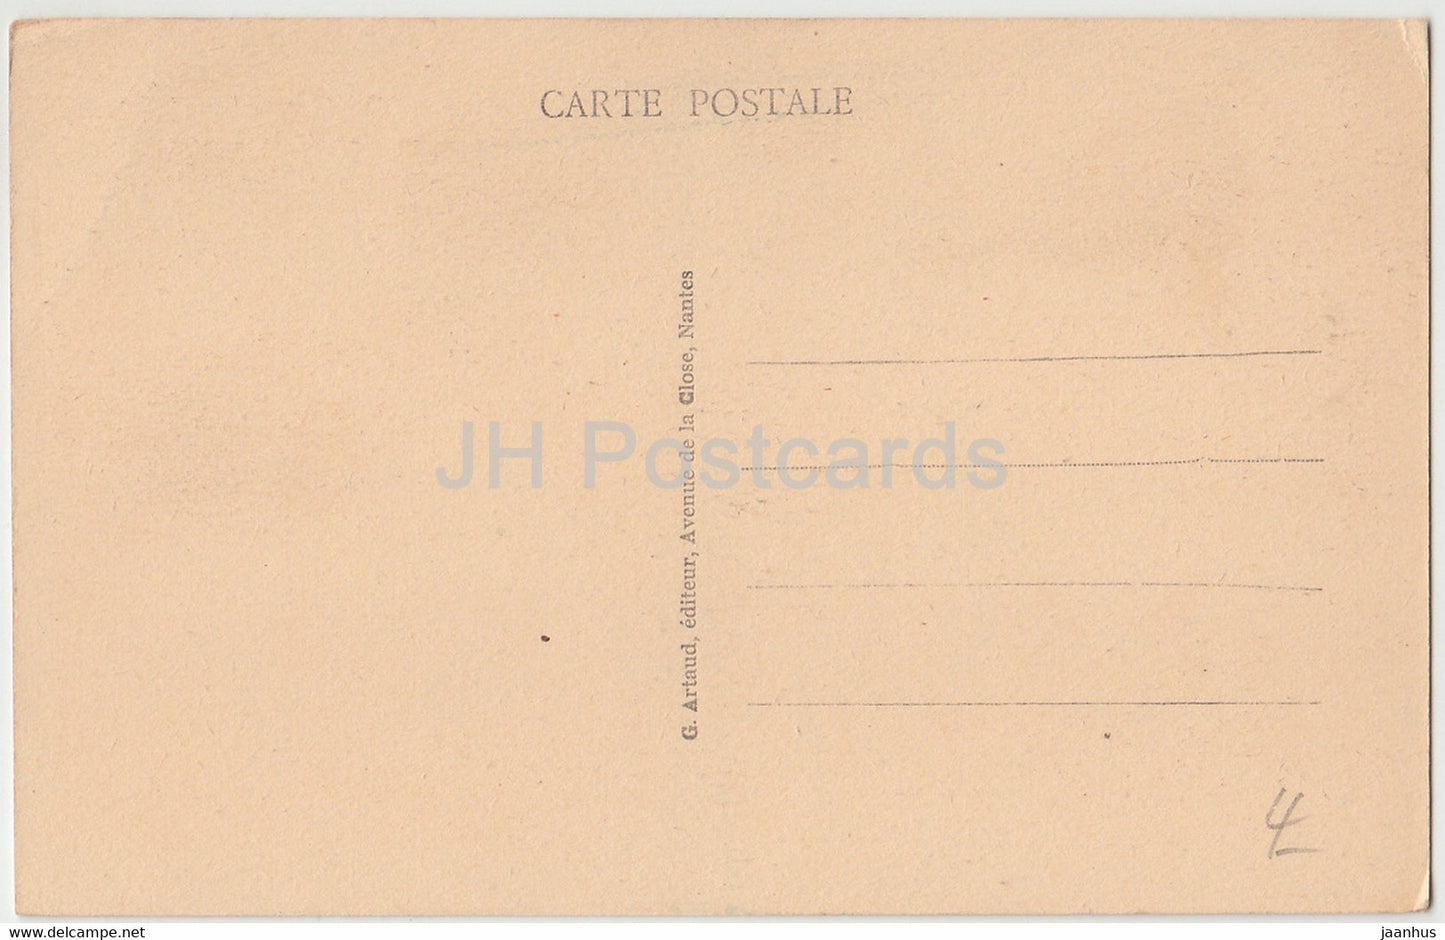 Morgat - Moulin du Cap de la Chèvre - moulin à vent - 81 - carte postale ancienne - France - inutilisée